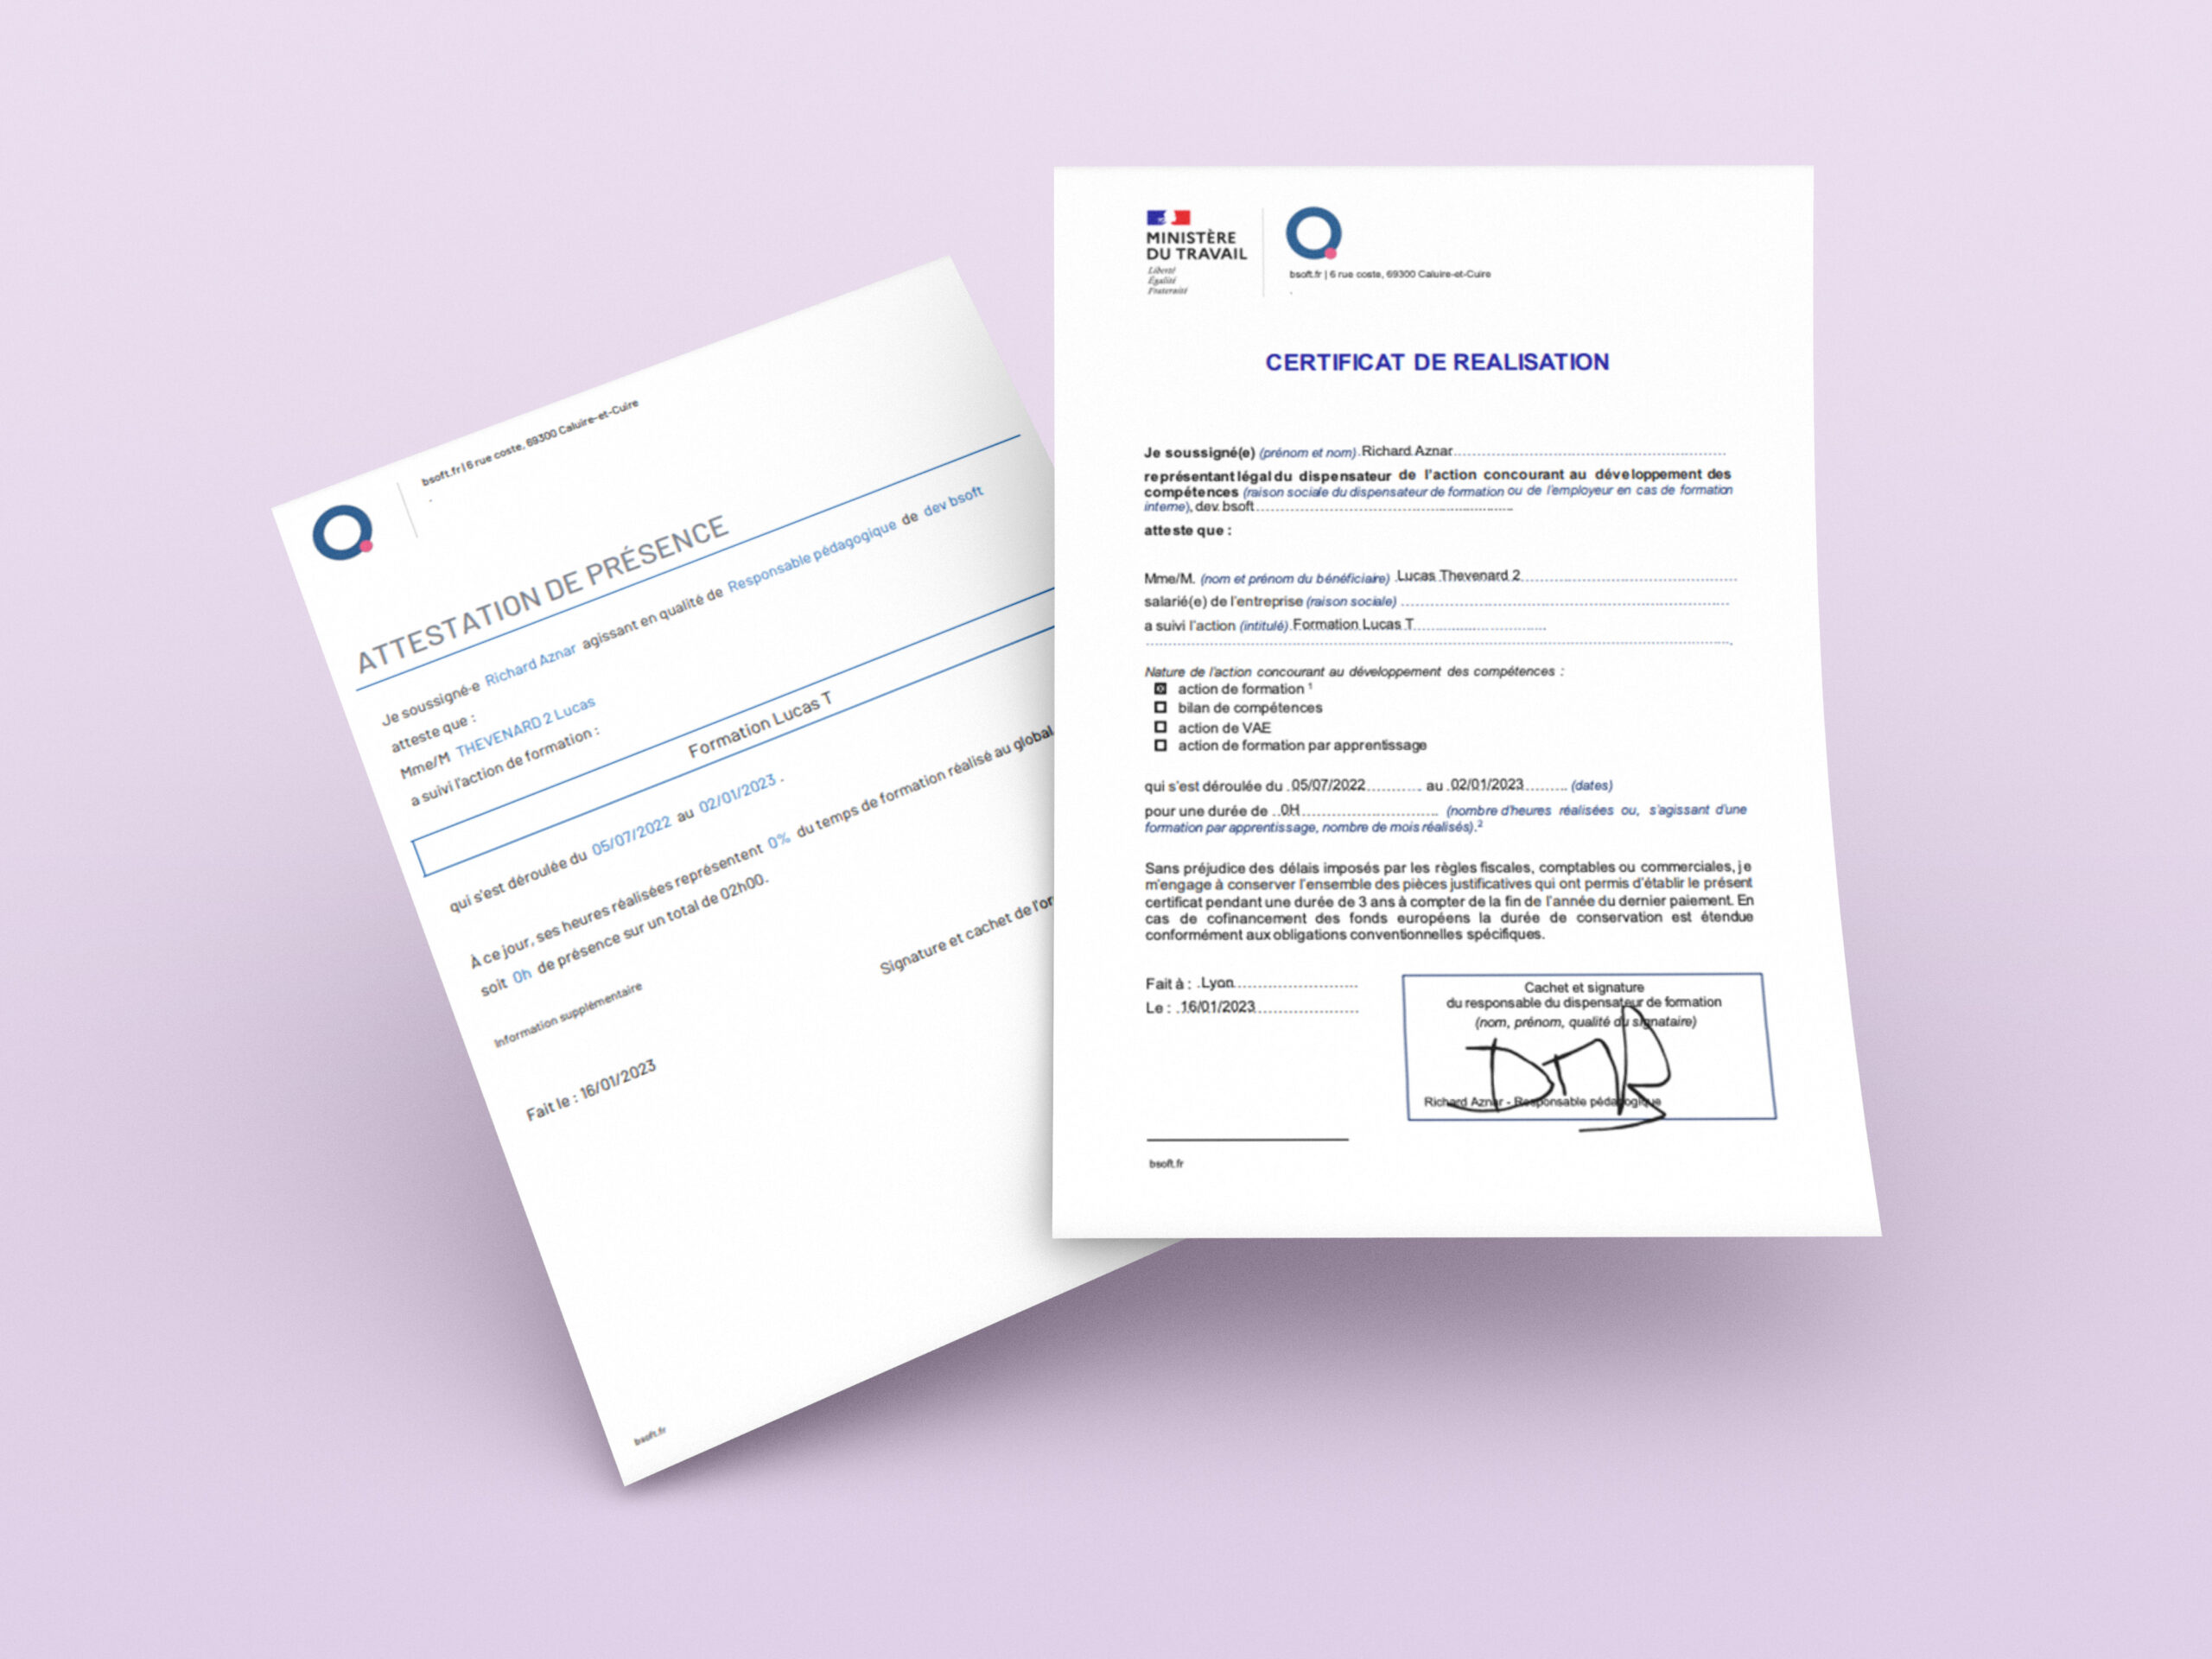 Attestation et certificat de réalisation de l'entreprise Bsoft sur fond violet, destinés aux grandes écoles, entreprises et organismes de formation.